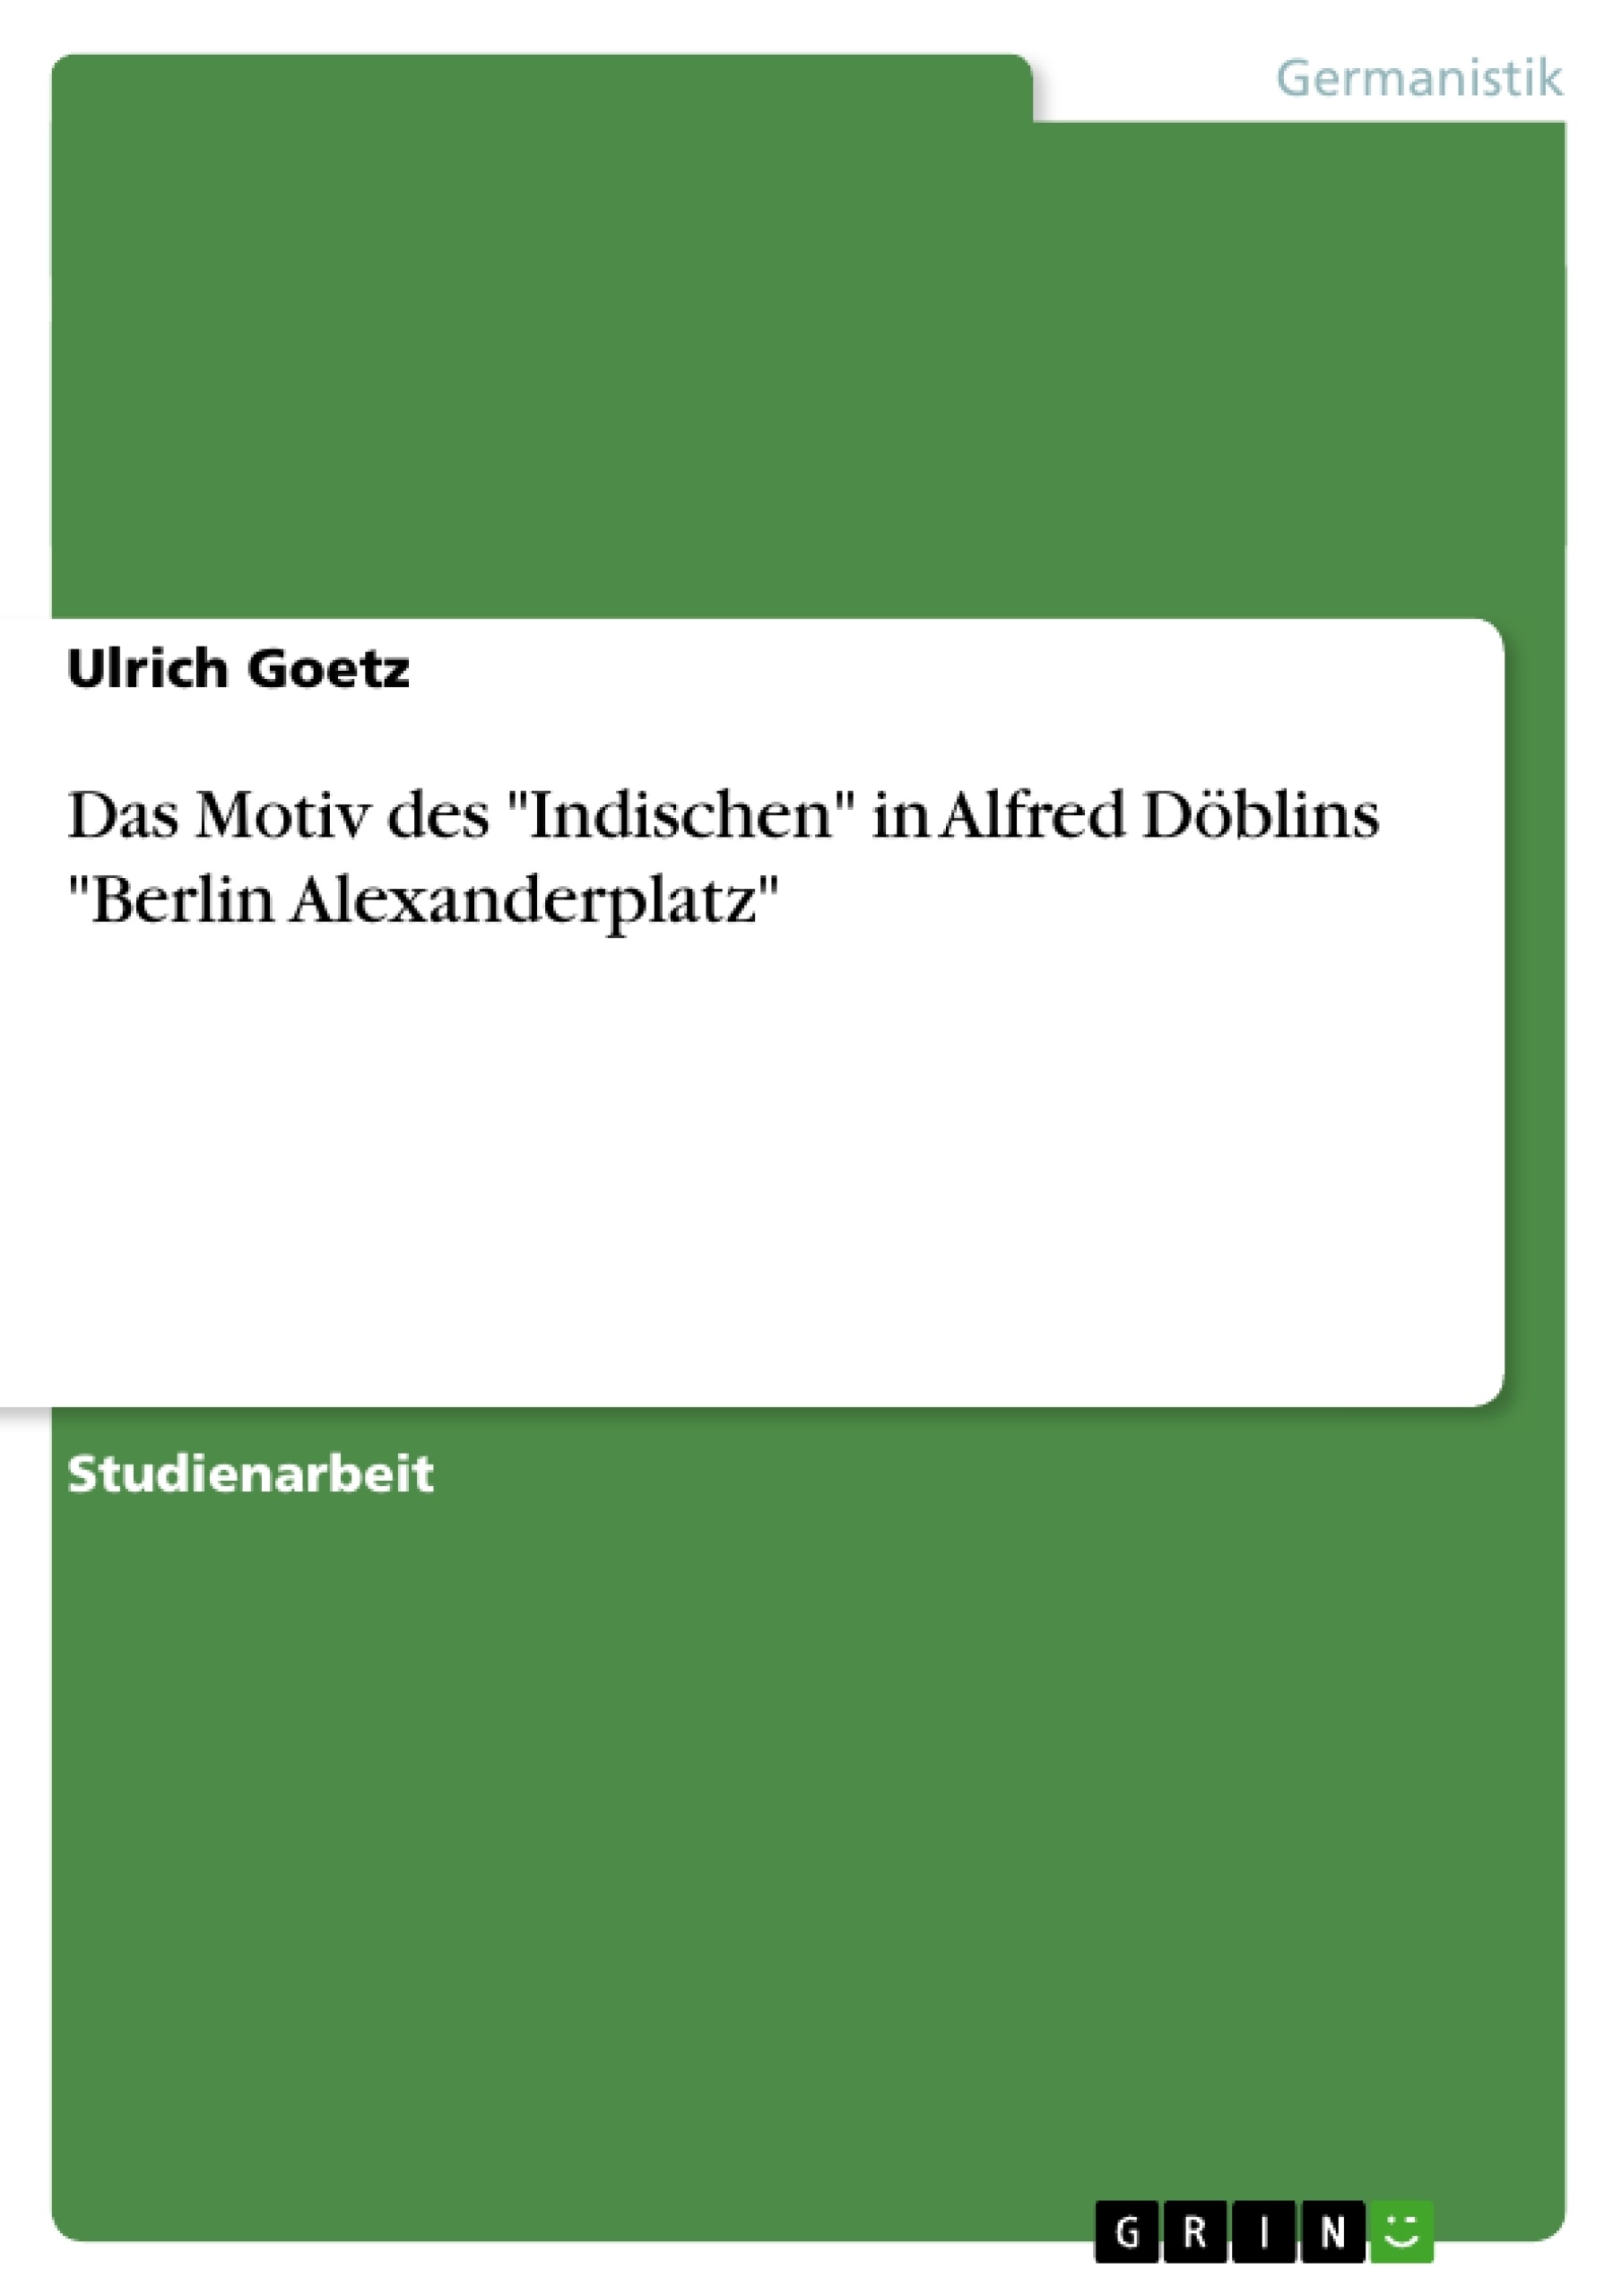 Title: Das Motiv des "Indischen" in Alfred Döblins "Berlin Alexanderplatz"